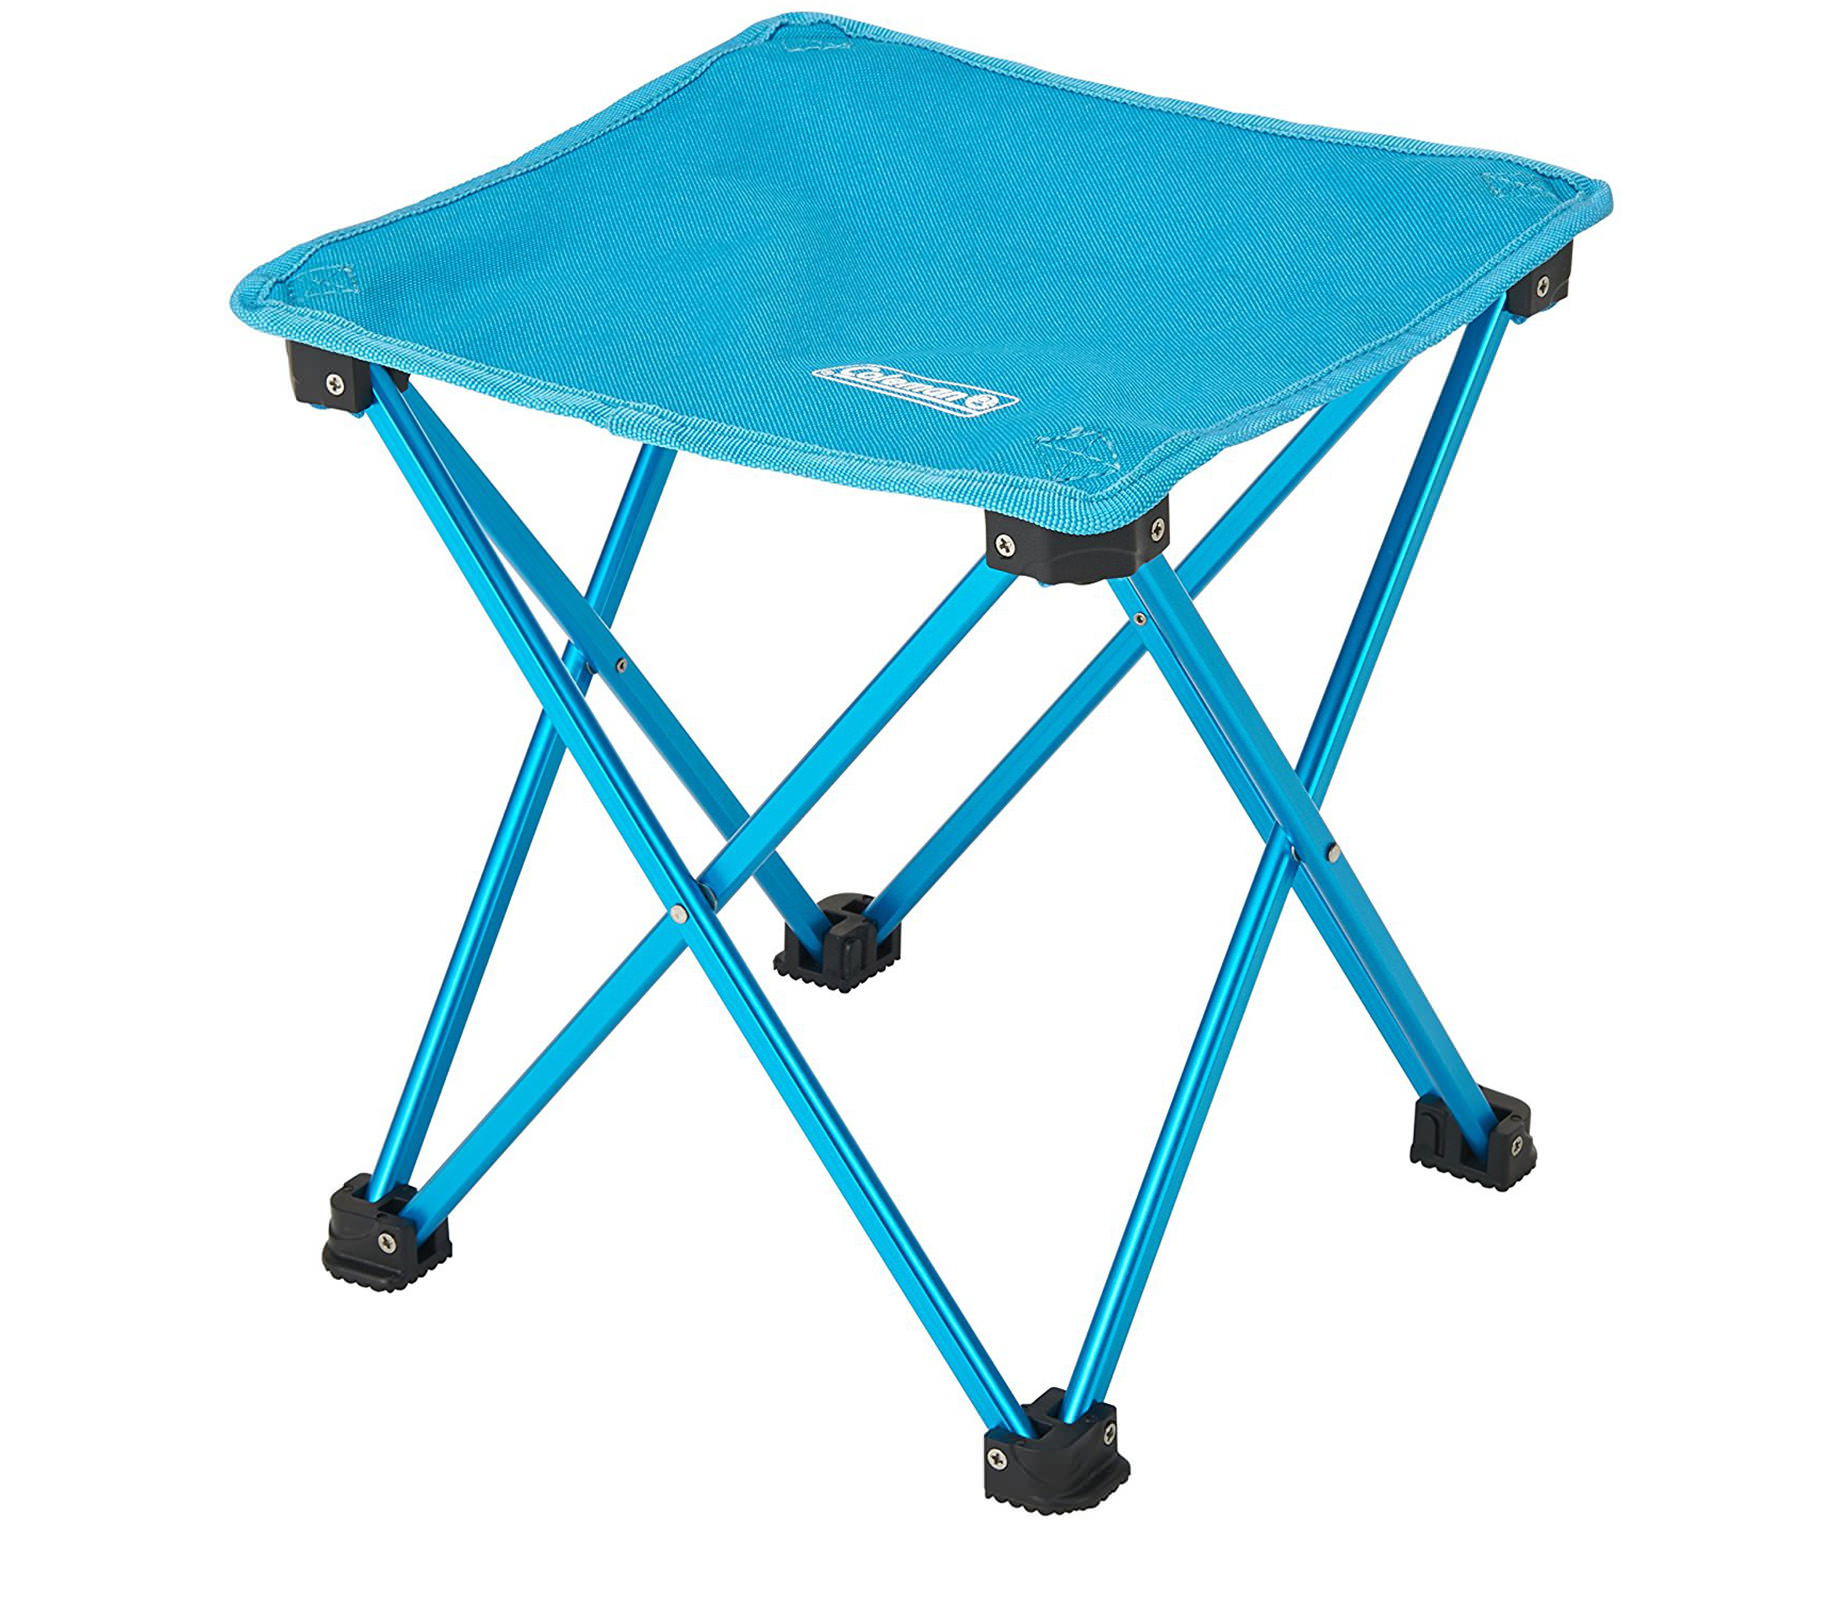 ghe-dau-coleman-compact-trekking-stool-blue-2000021983-7592-wetrek_vn